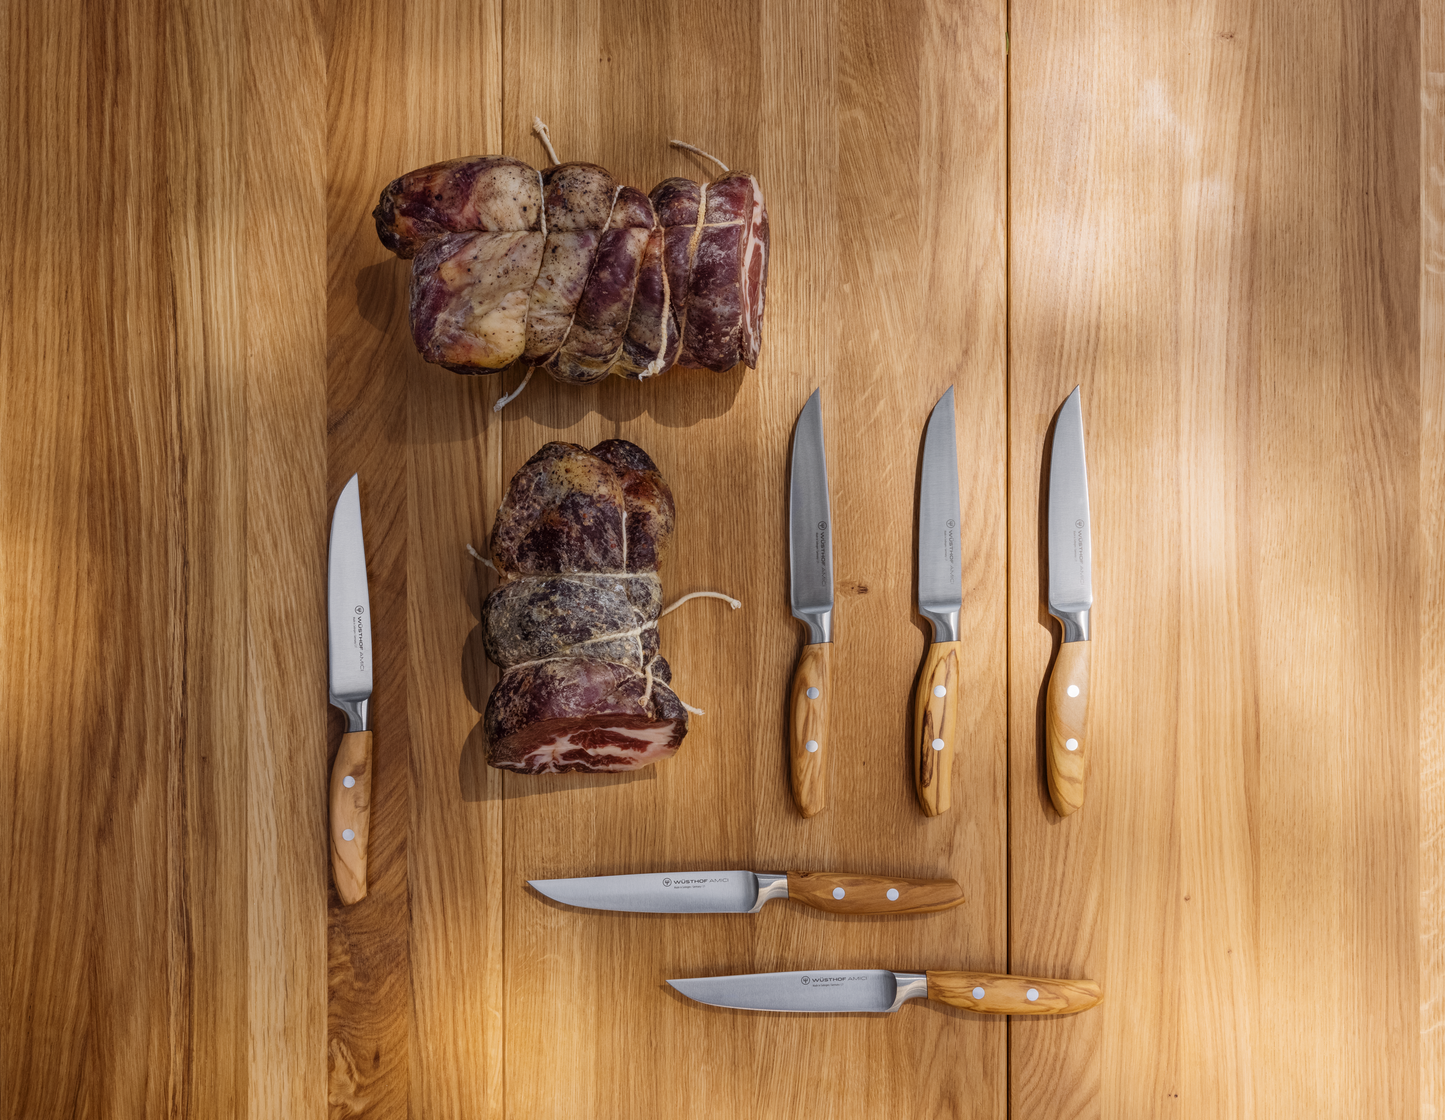 Amici Steak Knife 12 cm | 4 1/2 inch